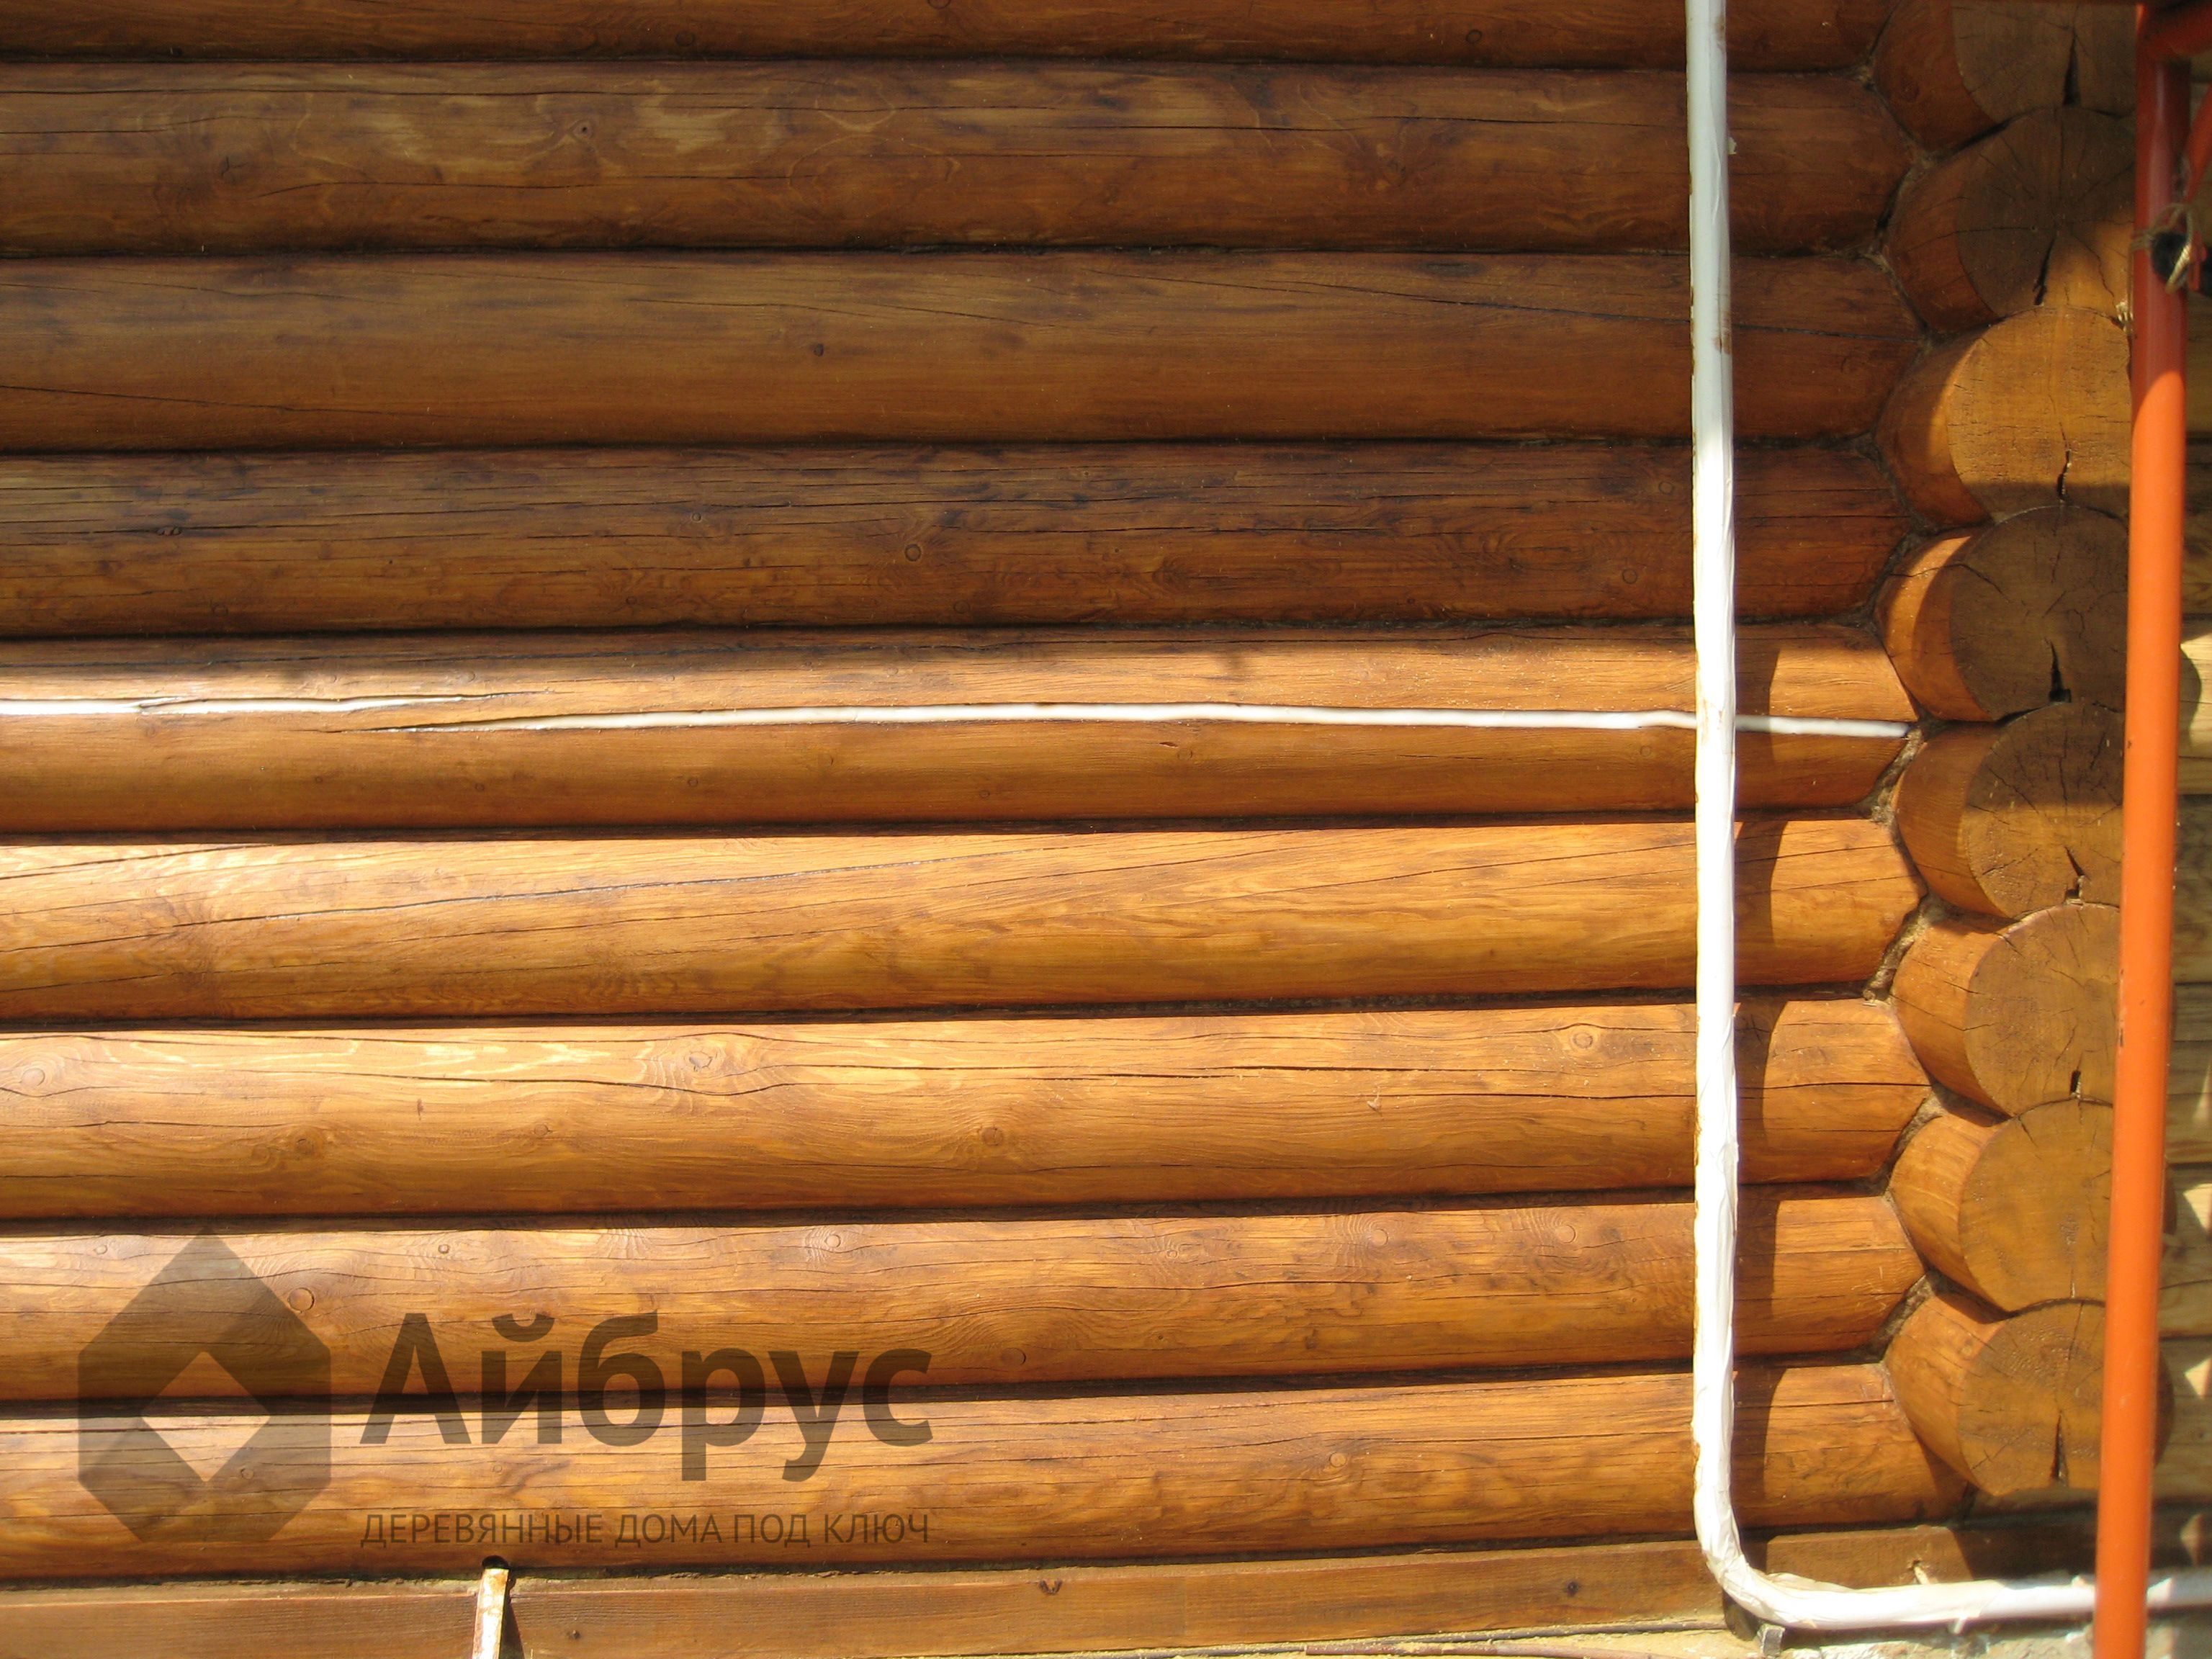 Фото конопатки швов паклей мастерами Айбруса снаружи дома